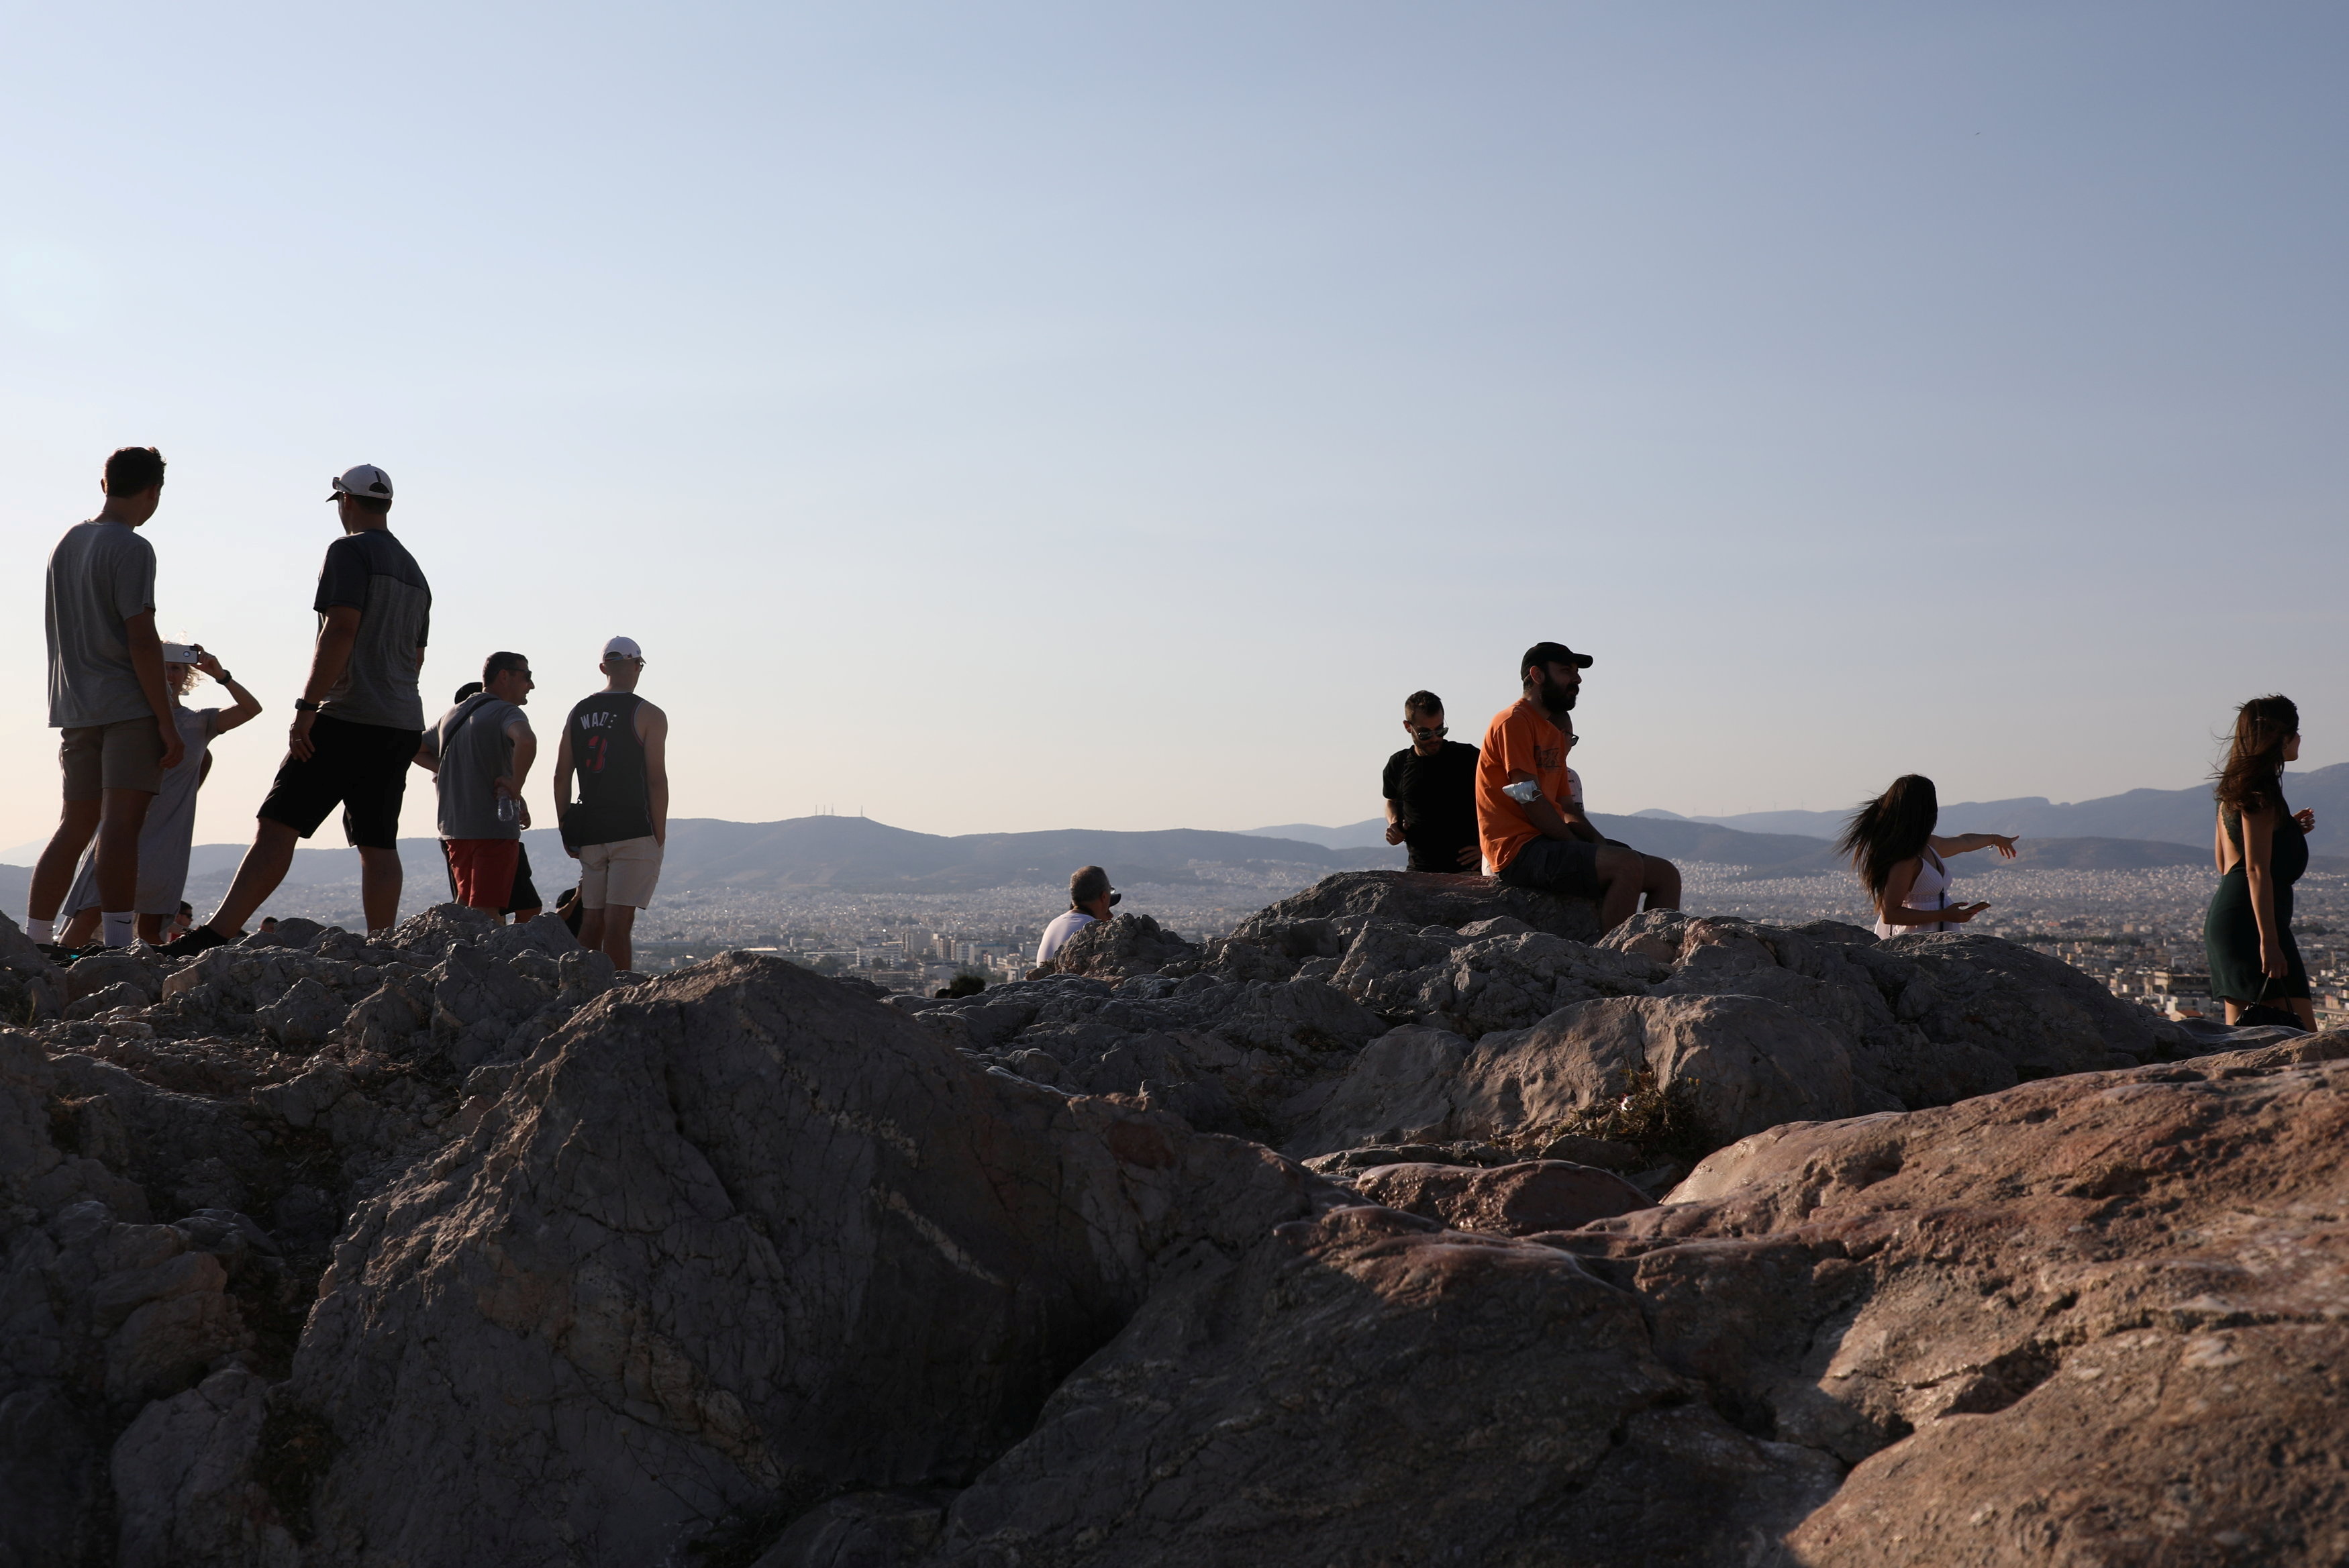 人们于 25 年 2021 月 25 日参观希腊雅典的 Areios Pagos 山。图片拍摄于 2021 年 XNUMX 月 XNUMX 日。REUTERS/Louiza Vradi